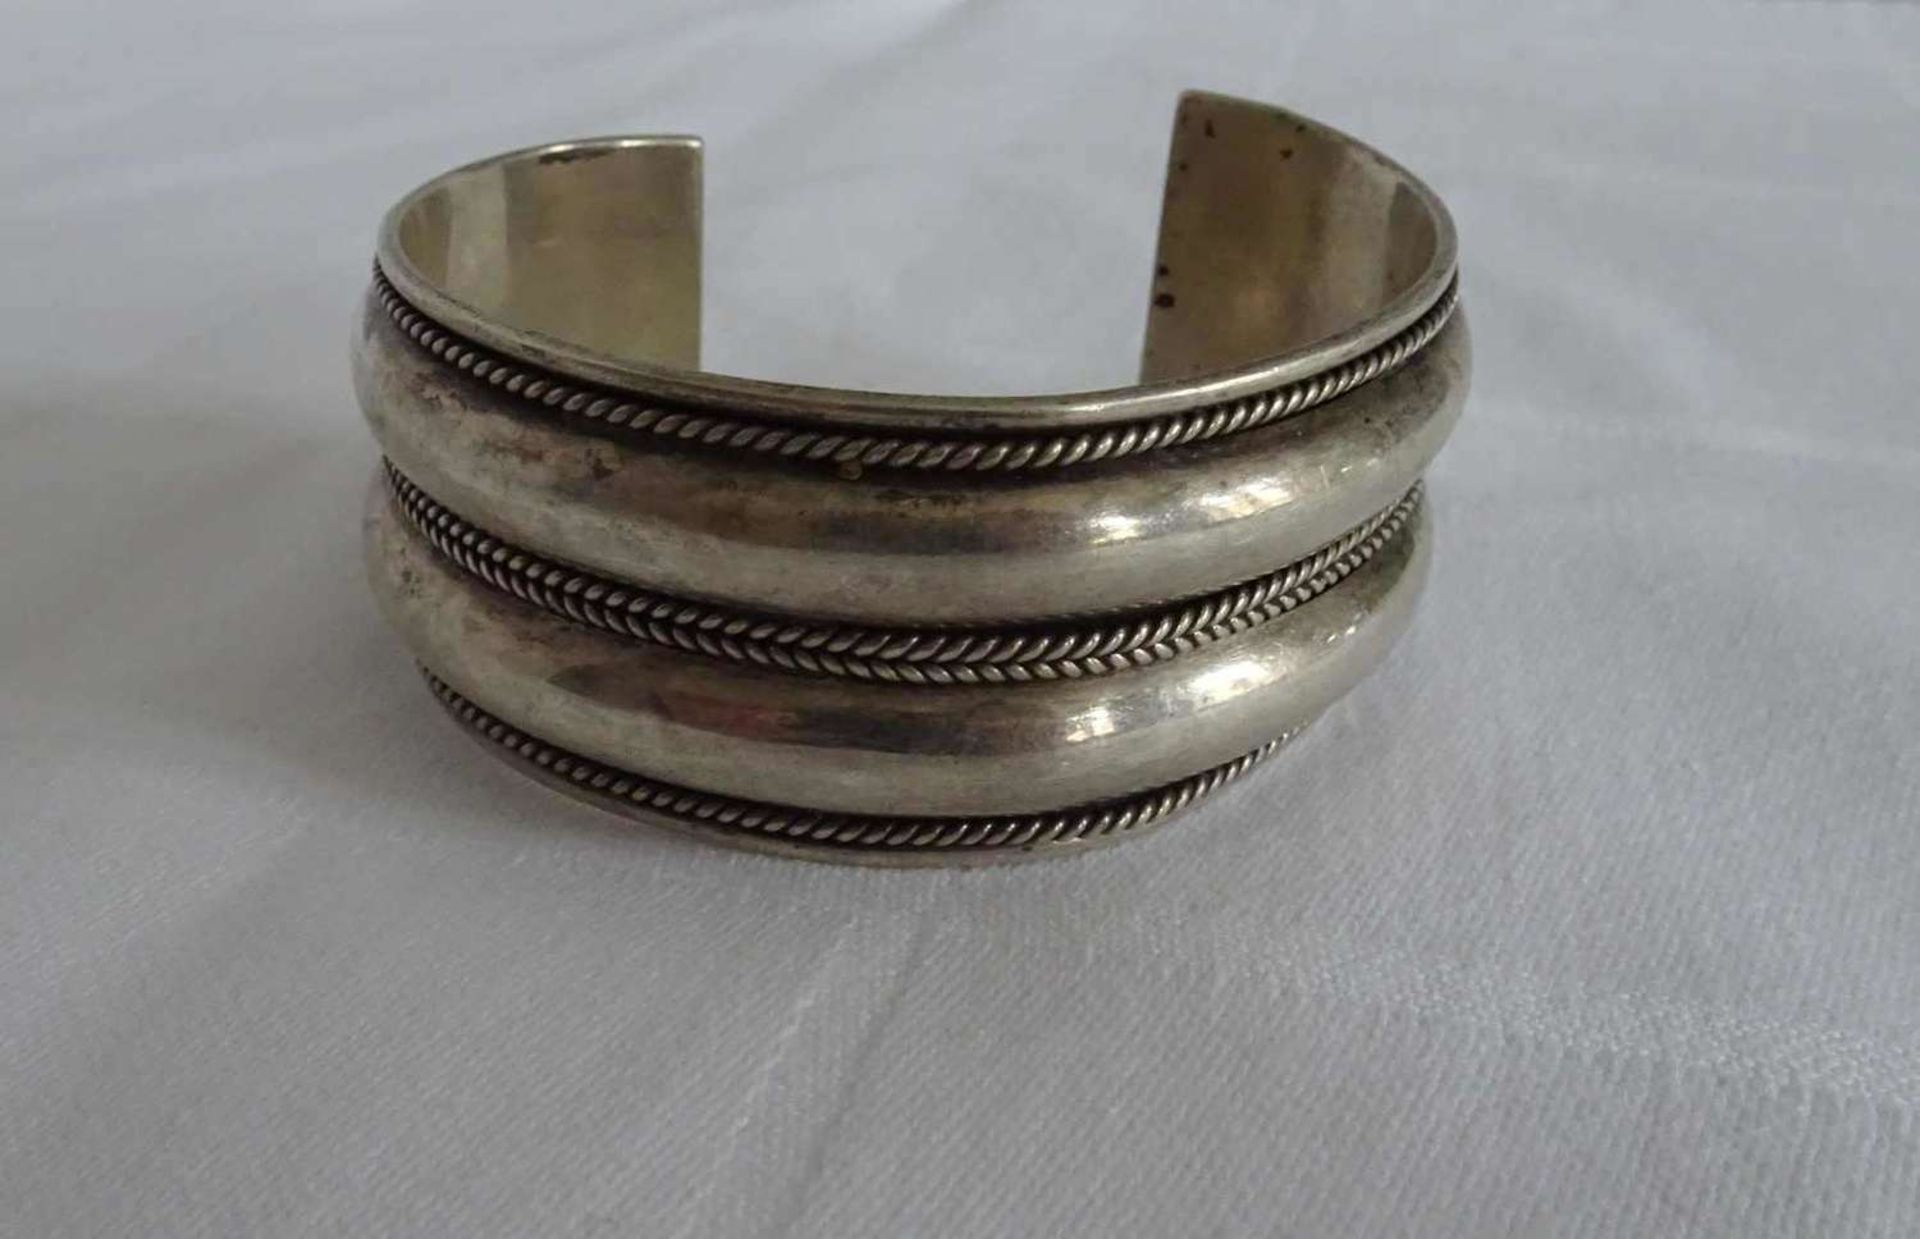 Armreif, 925er Silber, offene Ringschiene. Gewicht ca. 50 gr. Bangle, 925 silver, open ring band.